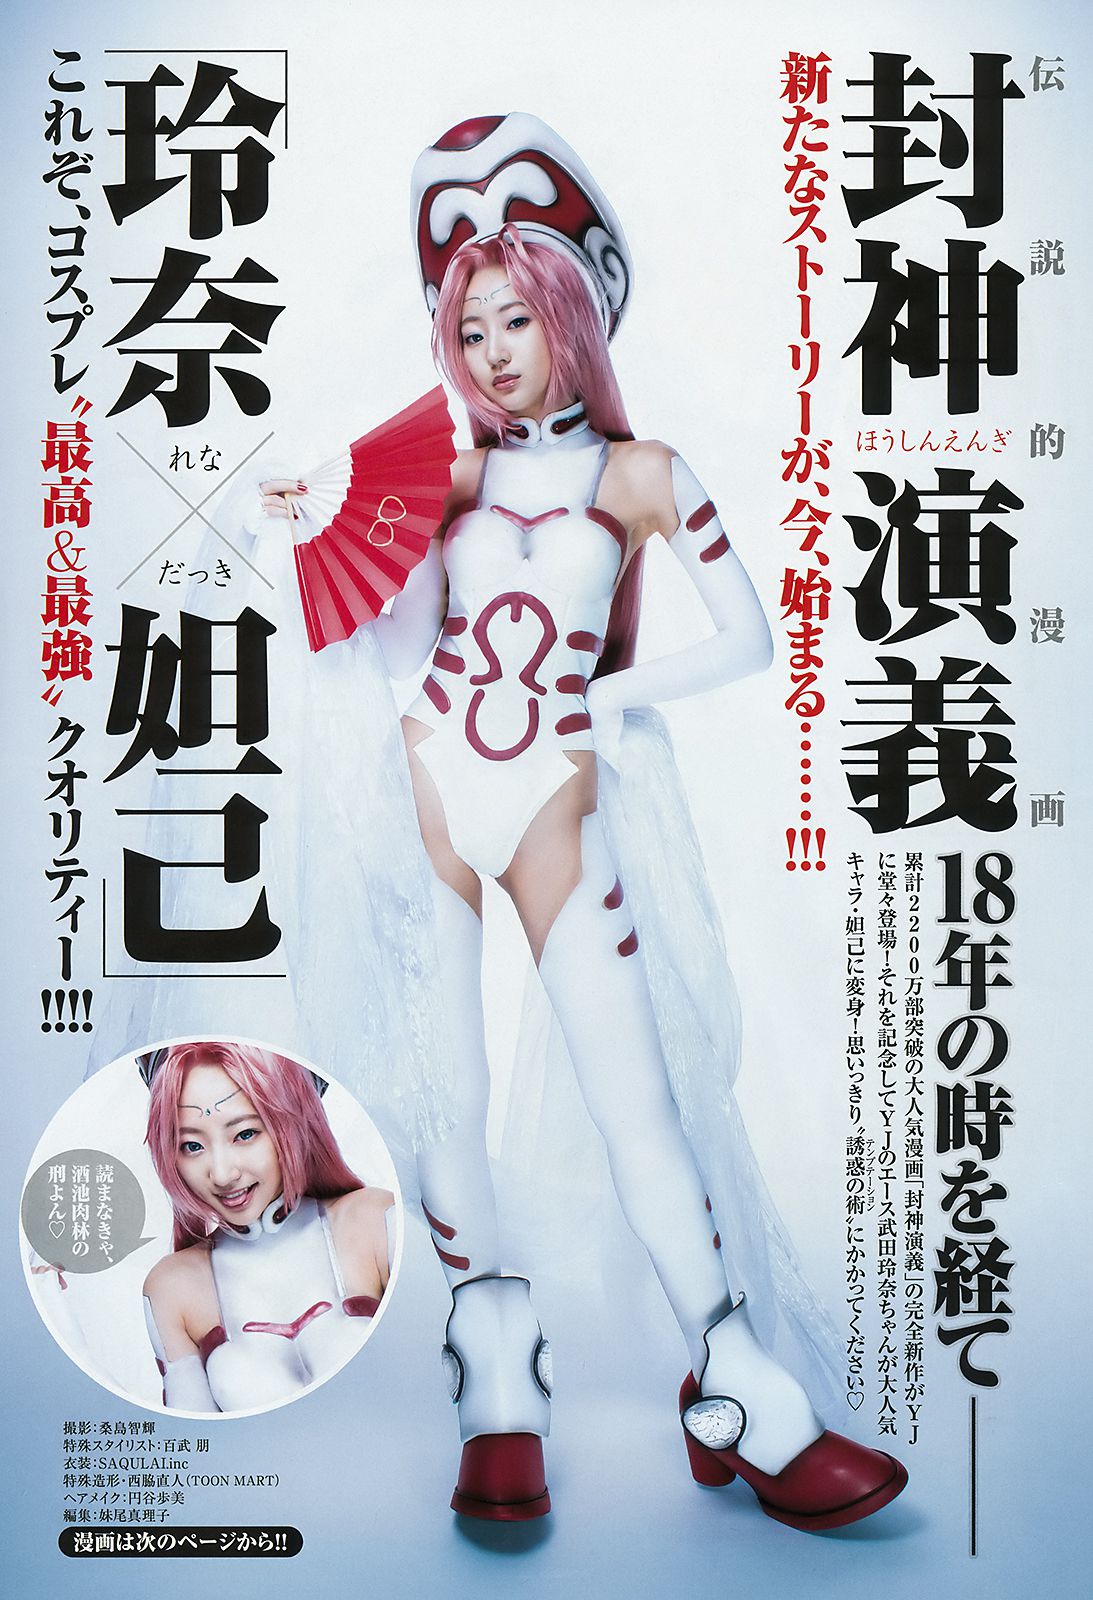 Rena Takeda Kasumi Arimura Rikako Aida [Weekly Young Jump] 2018 No.21-22 Photograph Page 2 No.e468e0